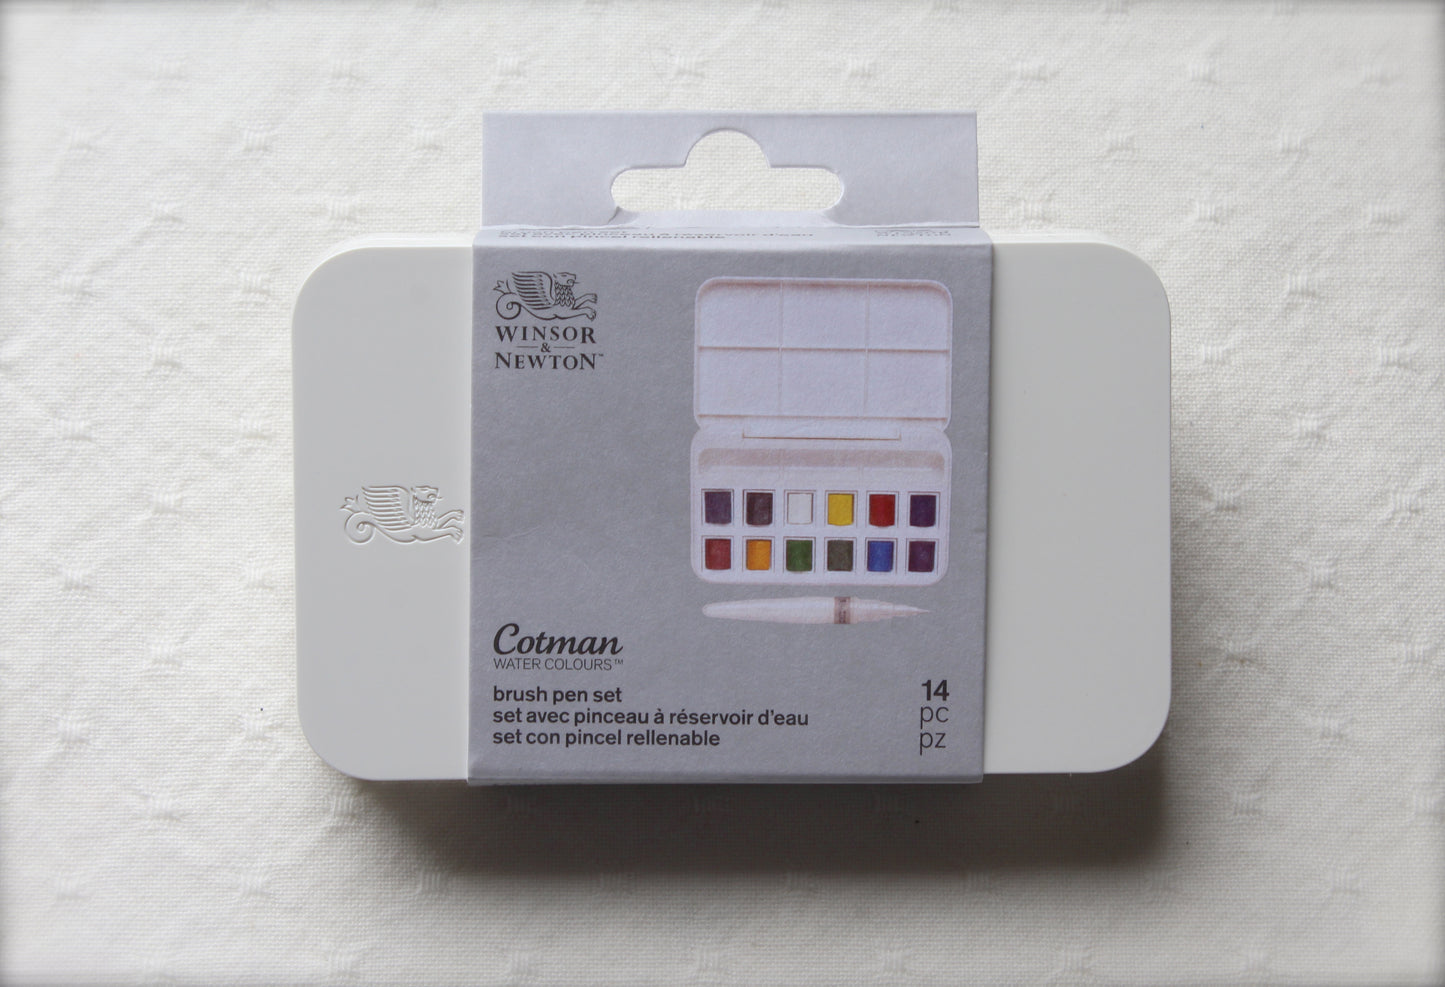 Winsor & Newton - Cotman Water Colour Paint Box